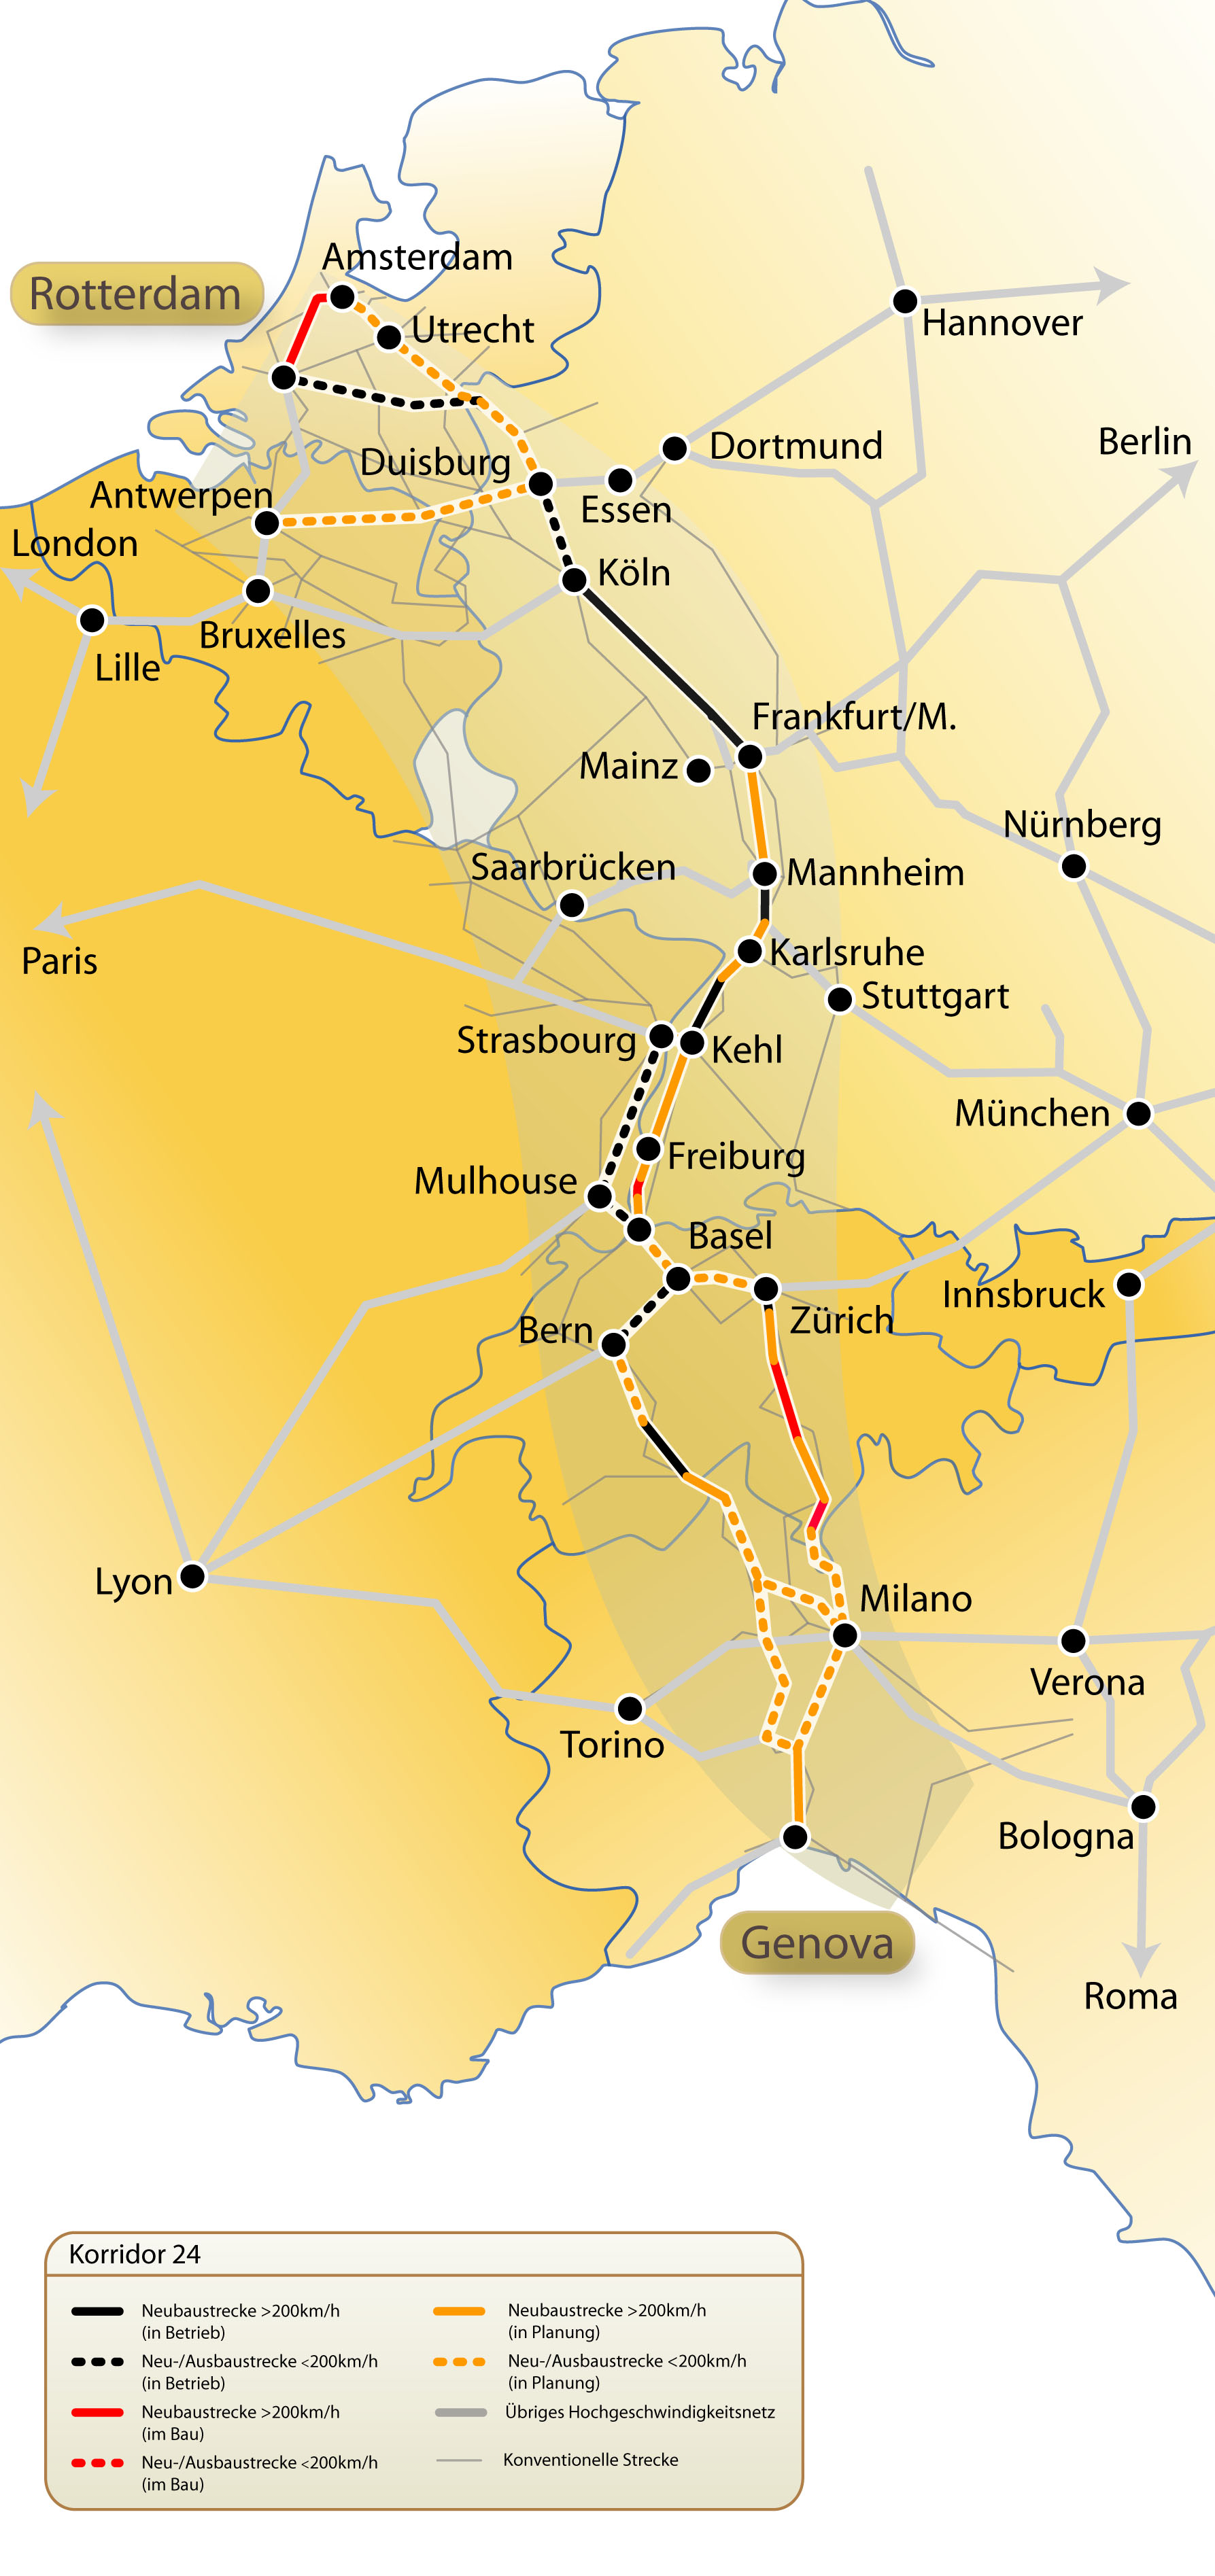 Der Korridor 24, wie die Strecke zwischen Genua und Rotterdam genannt wird, ist eine der wichtigsten europäischen Verkehrsachsen. (Bild: Bernd Scholl / ETH Zürich)